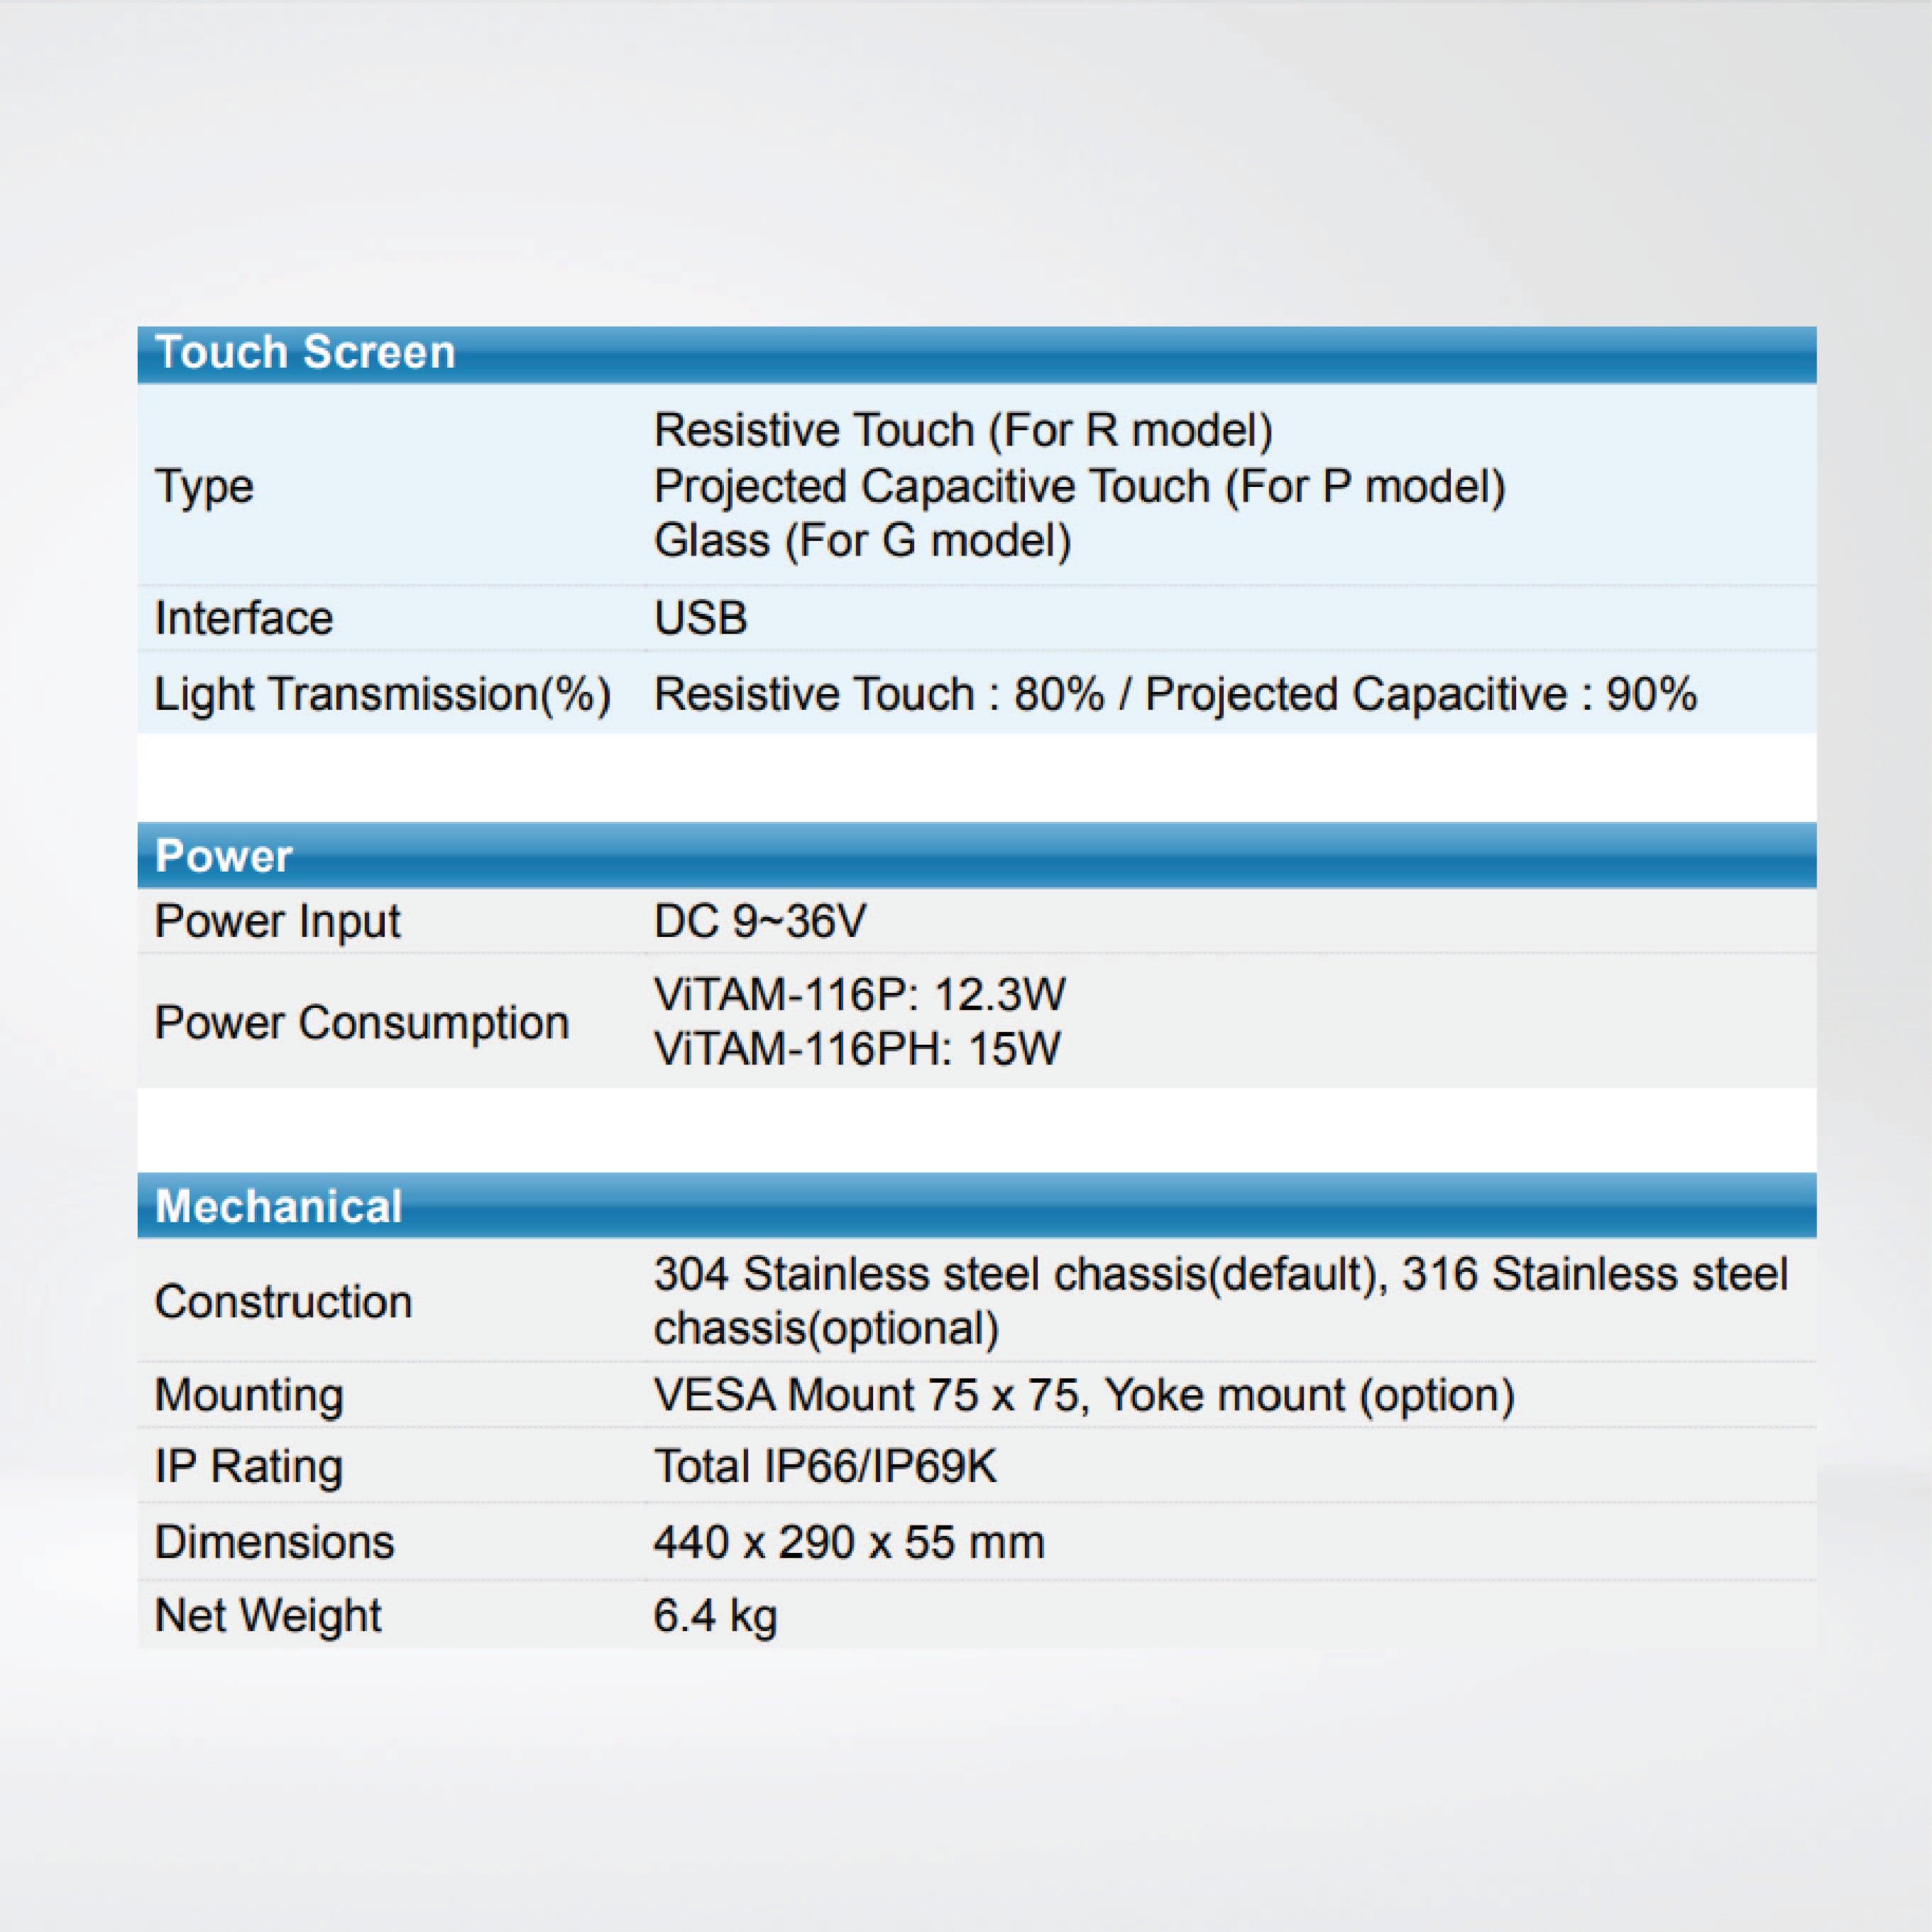 ViTAM-116RH 15.6″ New Gen. IP66/IP69K Stainless Steel Display - Riverplus